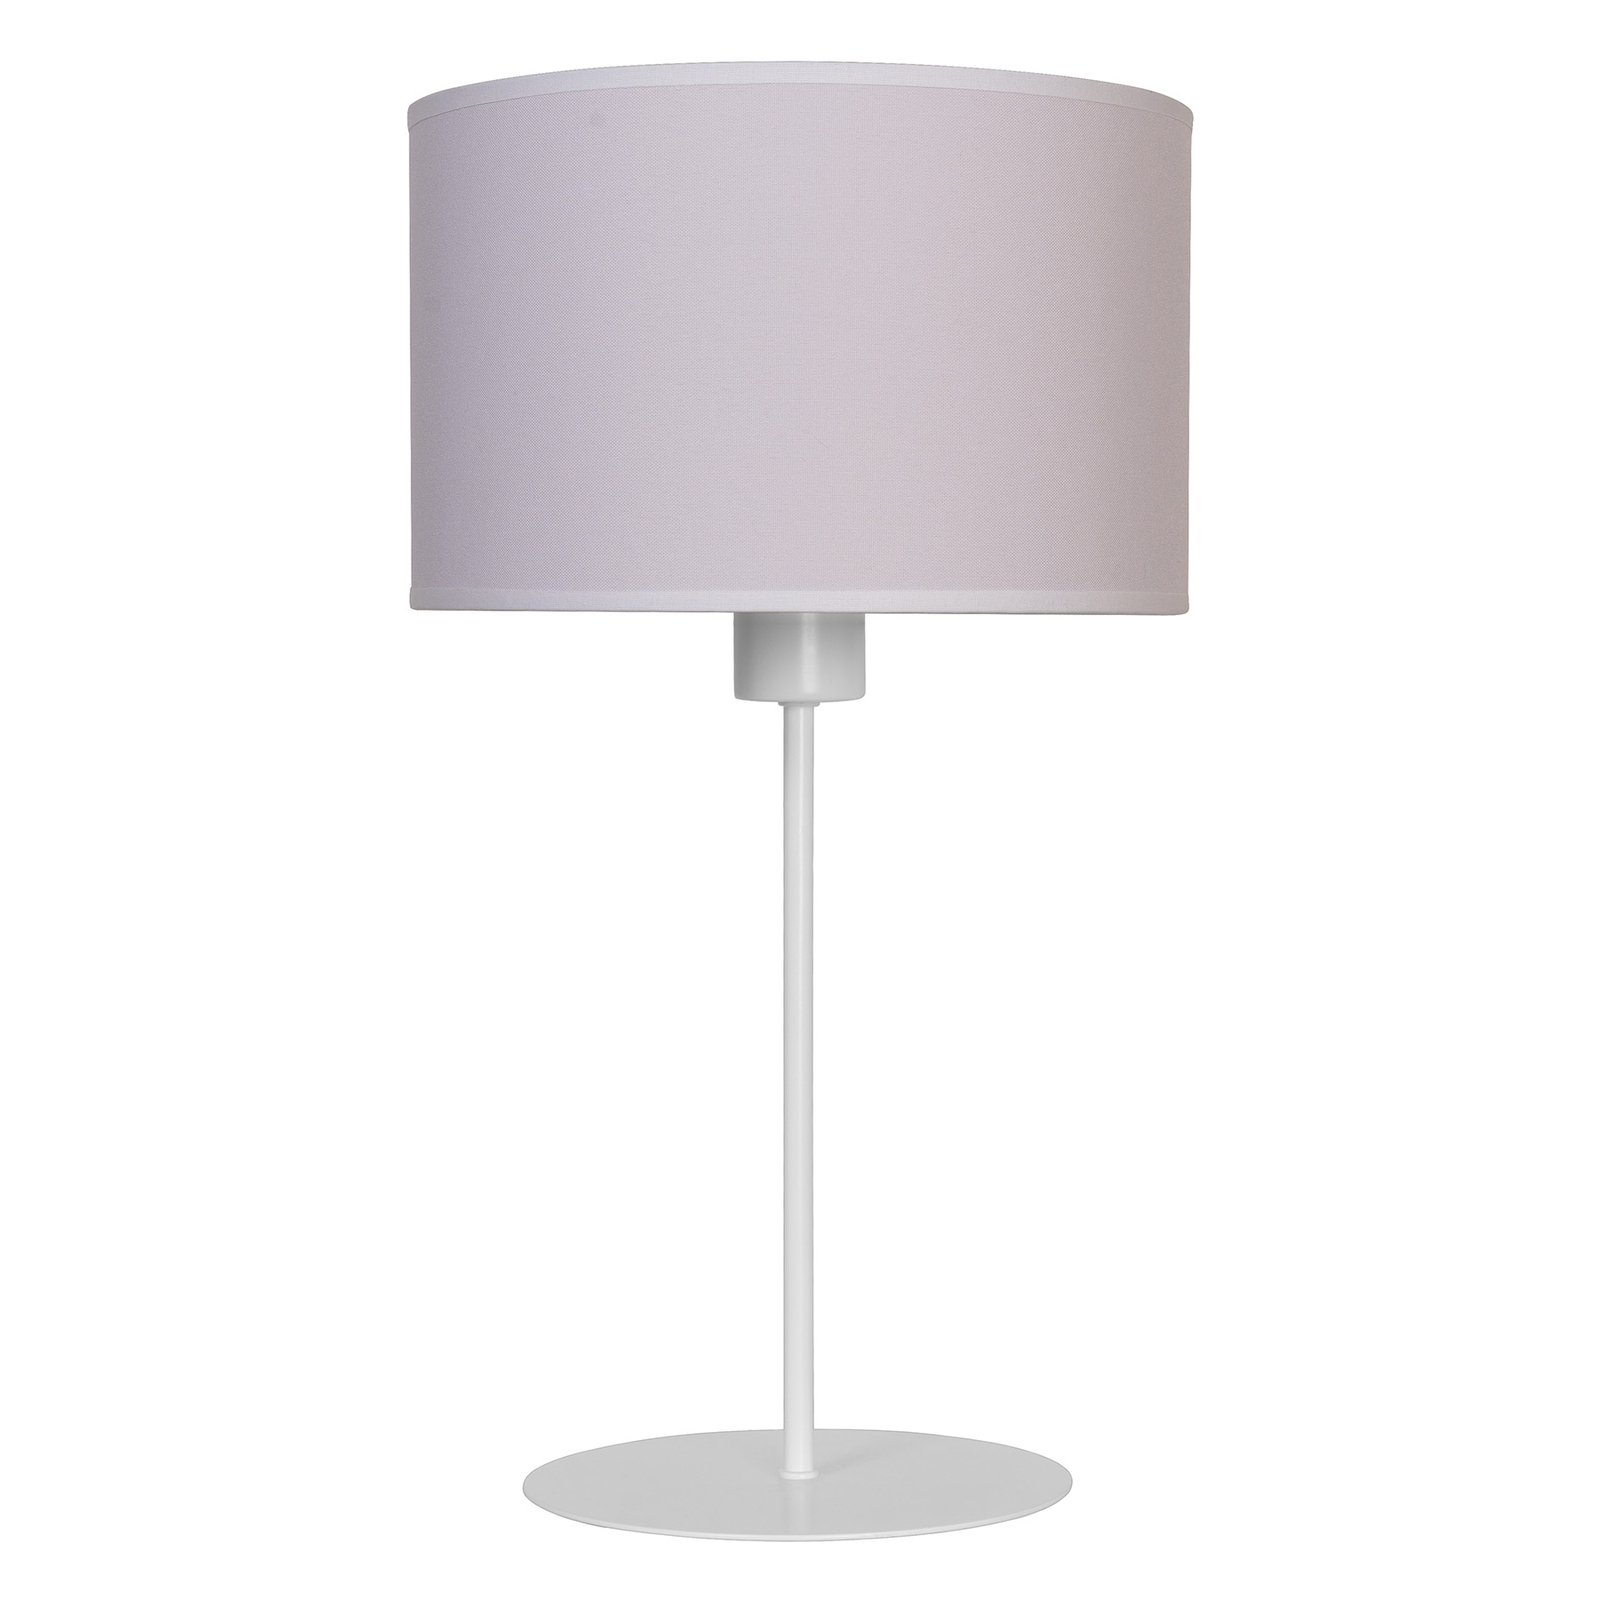 Promoten ik ben gelukkig Opblazen Tafellamp Roller, wit/goud, hoogte 50 cm | Lampen24.be